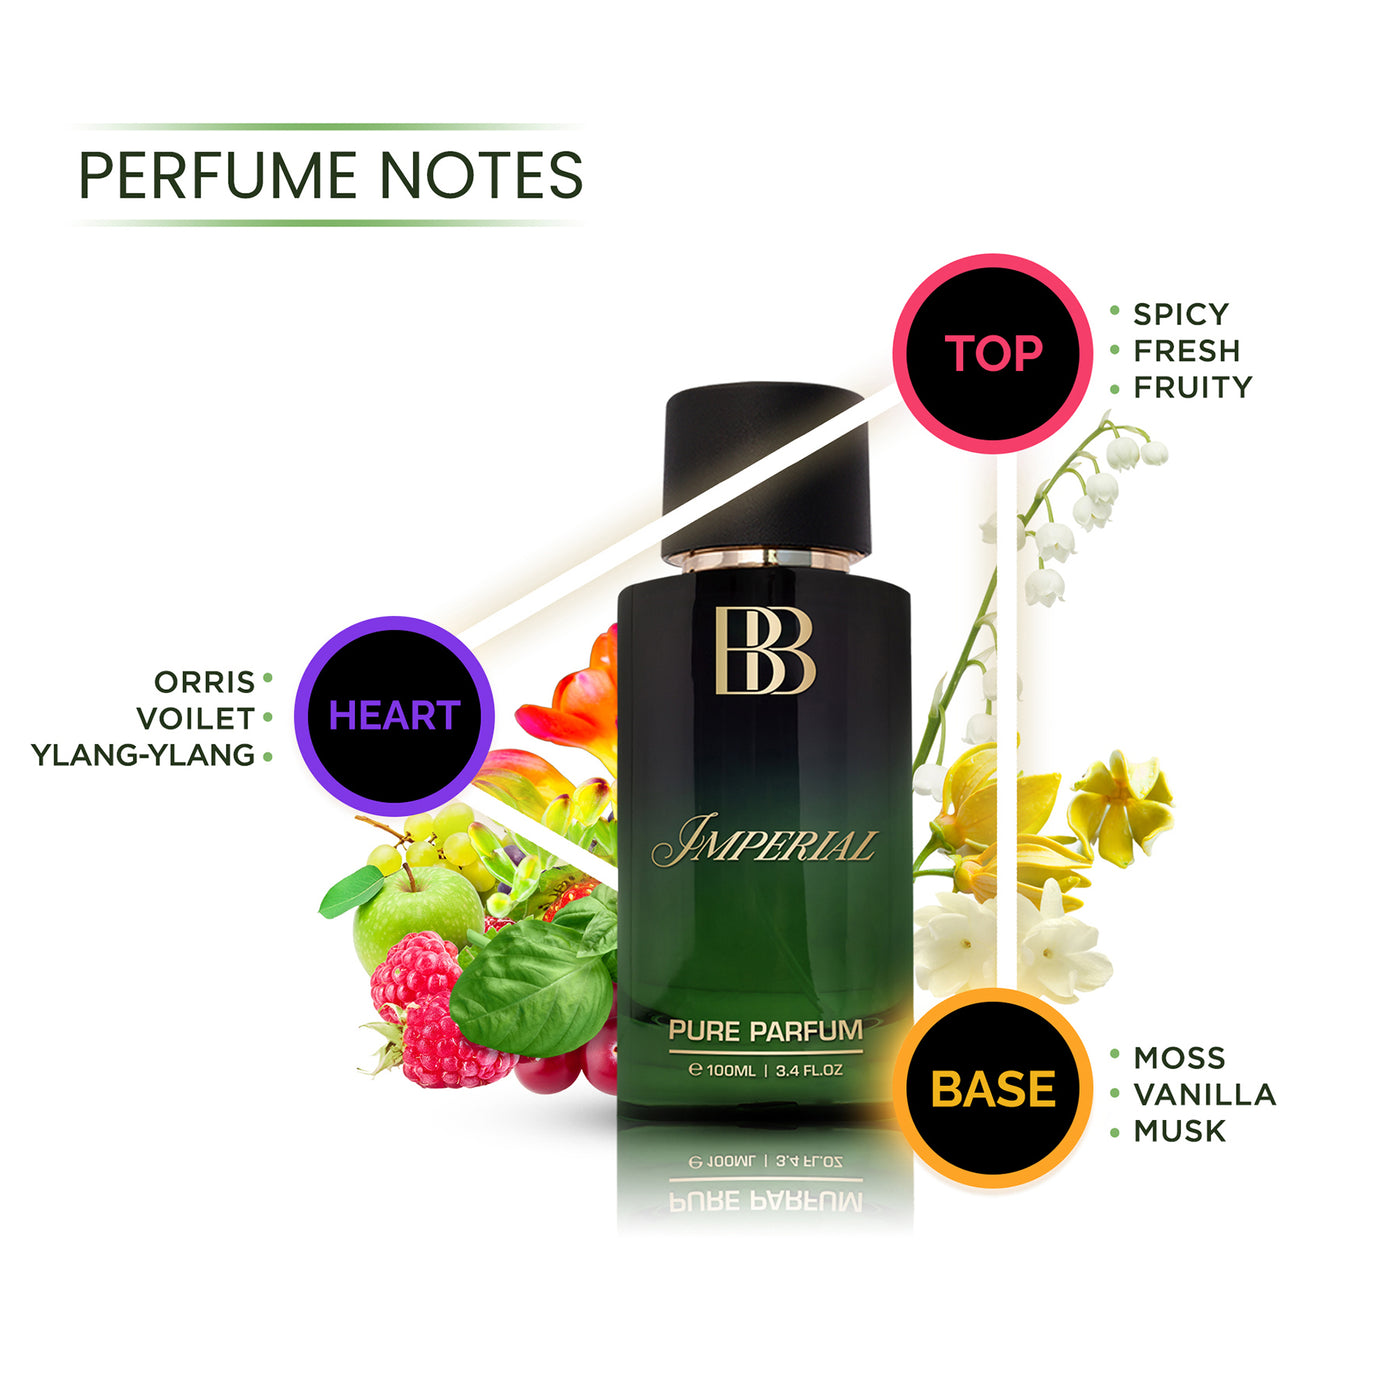 LÉGENDE + IMPERIAL Pure Parfum Combo, 2 X 100ml